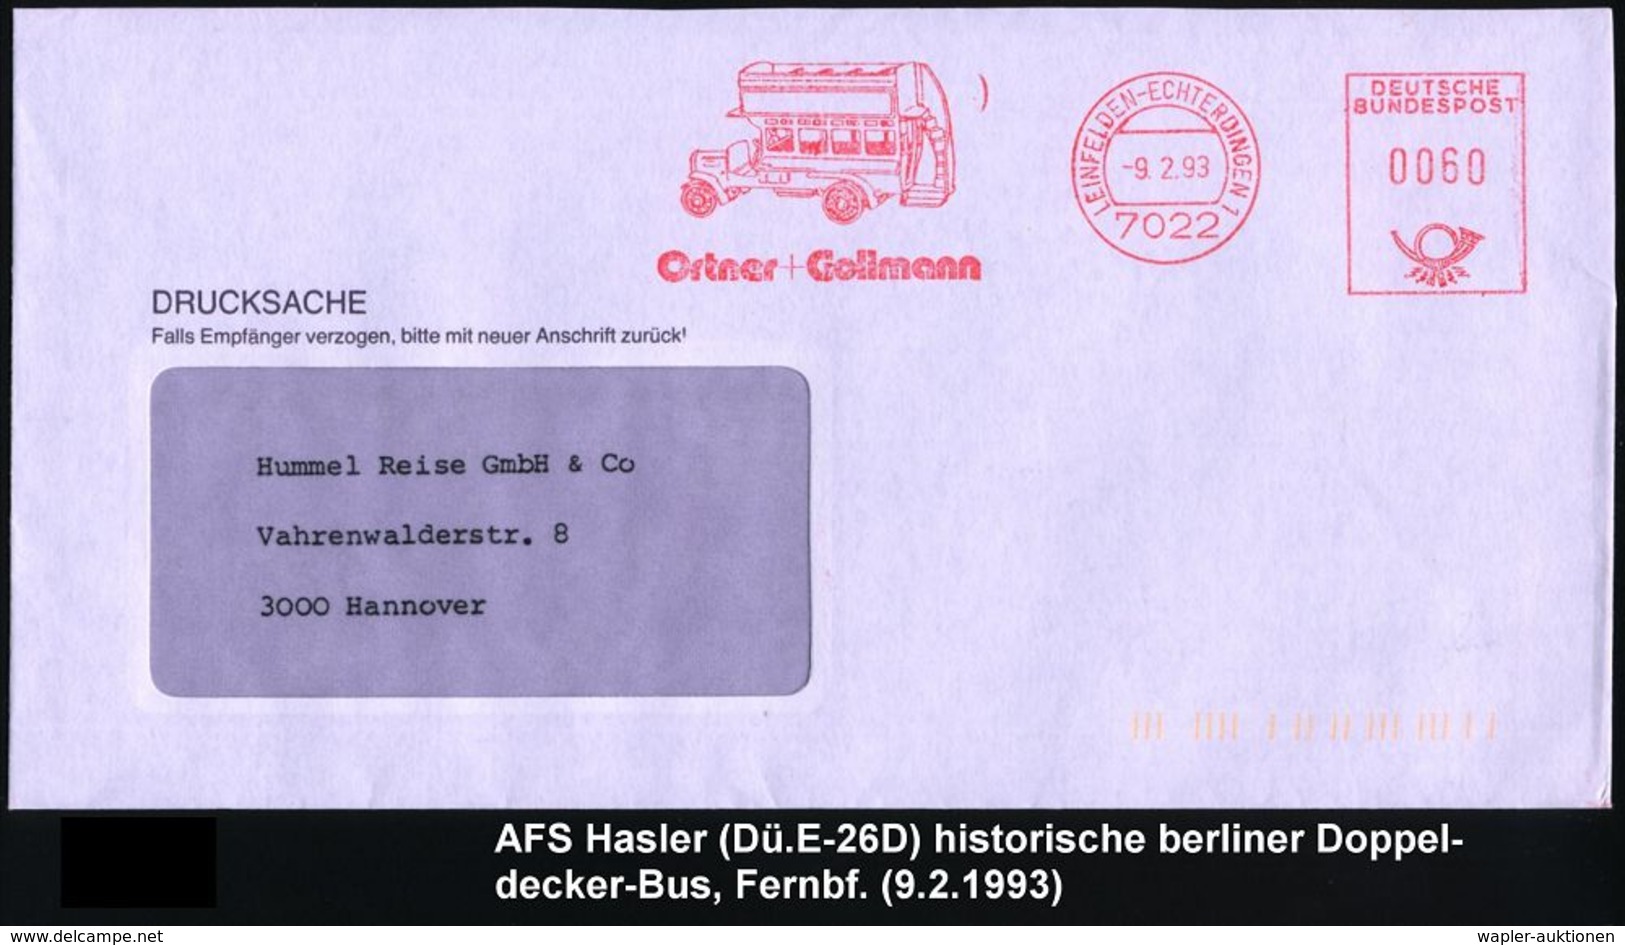 OMNIBUS / OMNIBUS-HERSTELLER : 7022 LEINEFELDEN-ECHTERDINGEN 1/ Ortner + Gollmann 1993 (9.2.) AFS = Histor. Doppeldecker - Bus